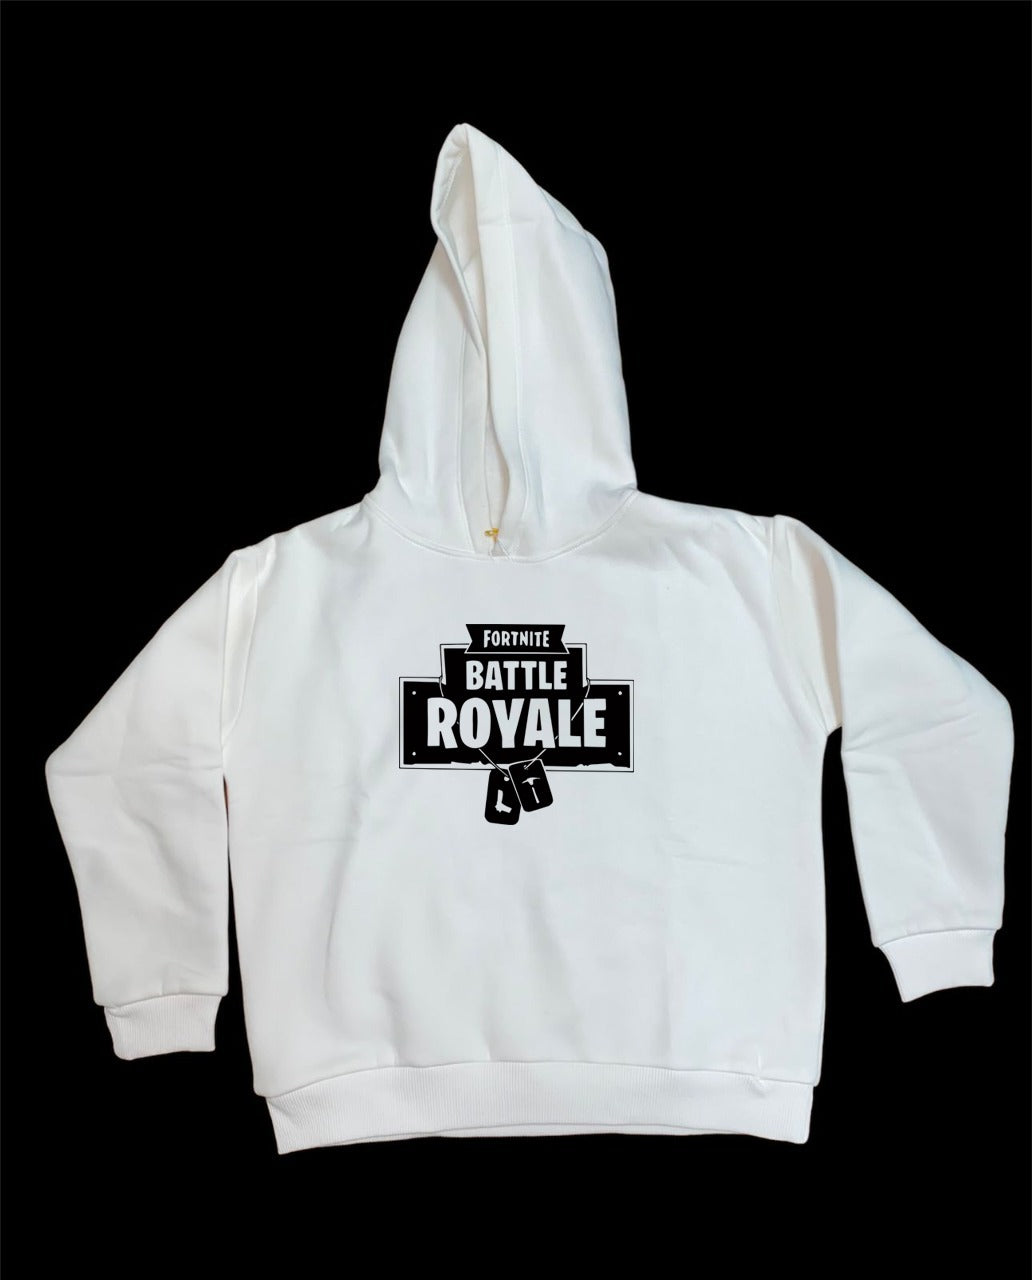 Fortnite Battle Royale hoodie